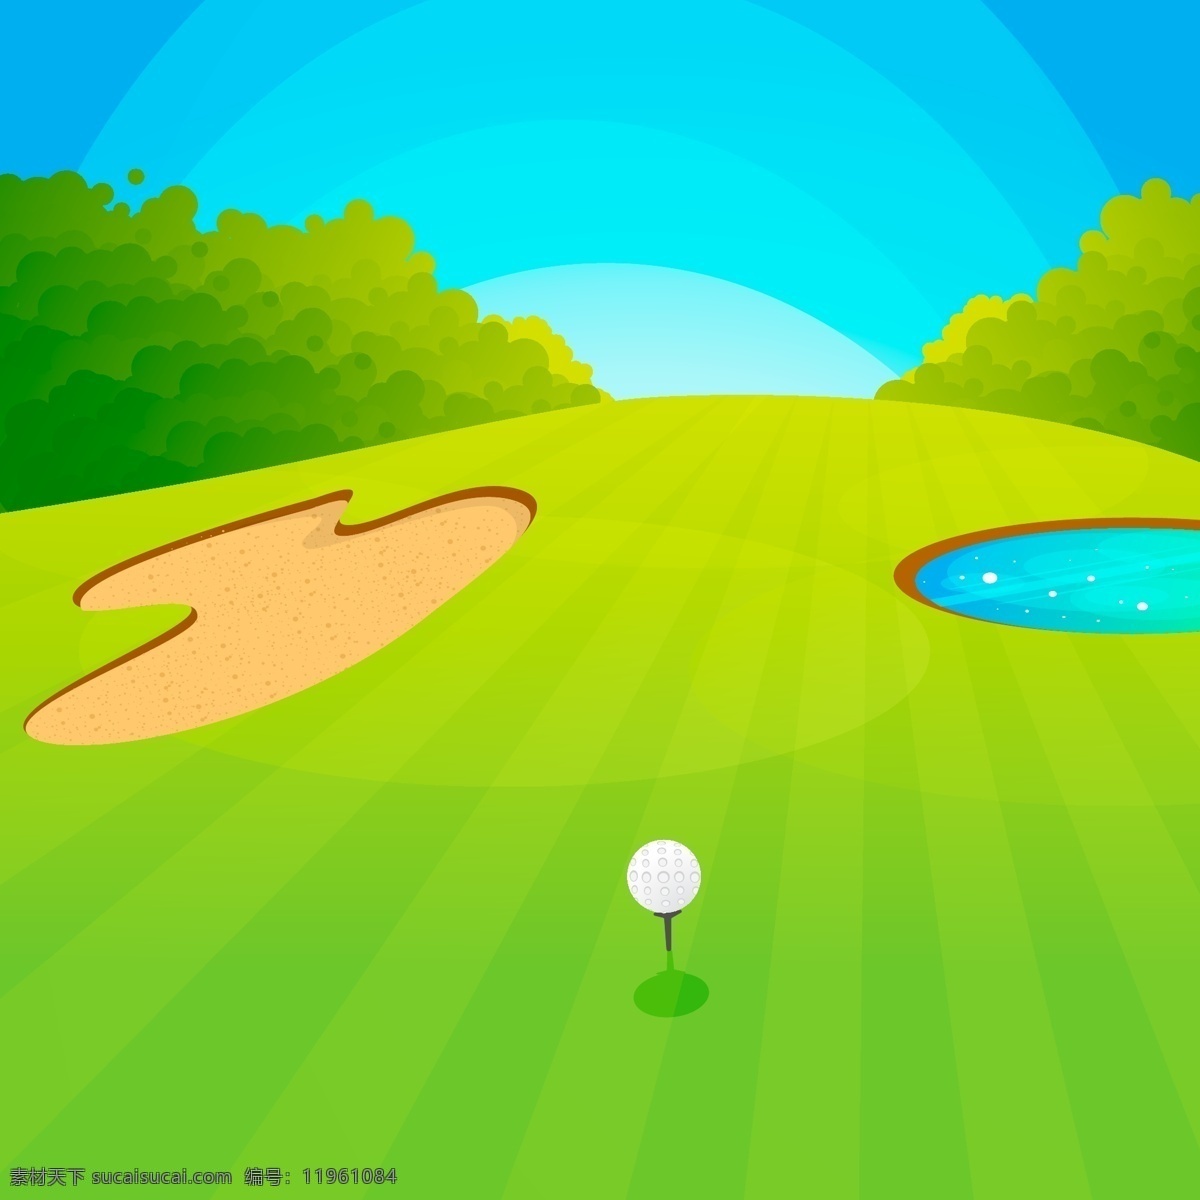 创意 高尔夫球场 矢量 池塘 灌木 水坑 树木 草坪 高尔夫 高尔夫球 矢量图 ai格式 卡通风景 生活百科 休闲娱乐